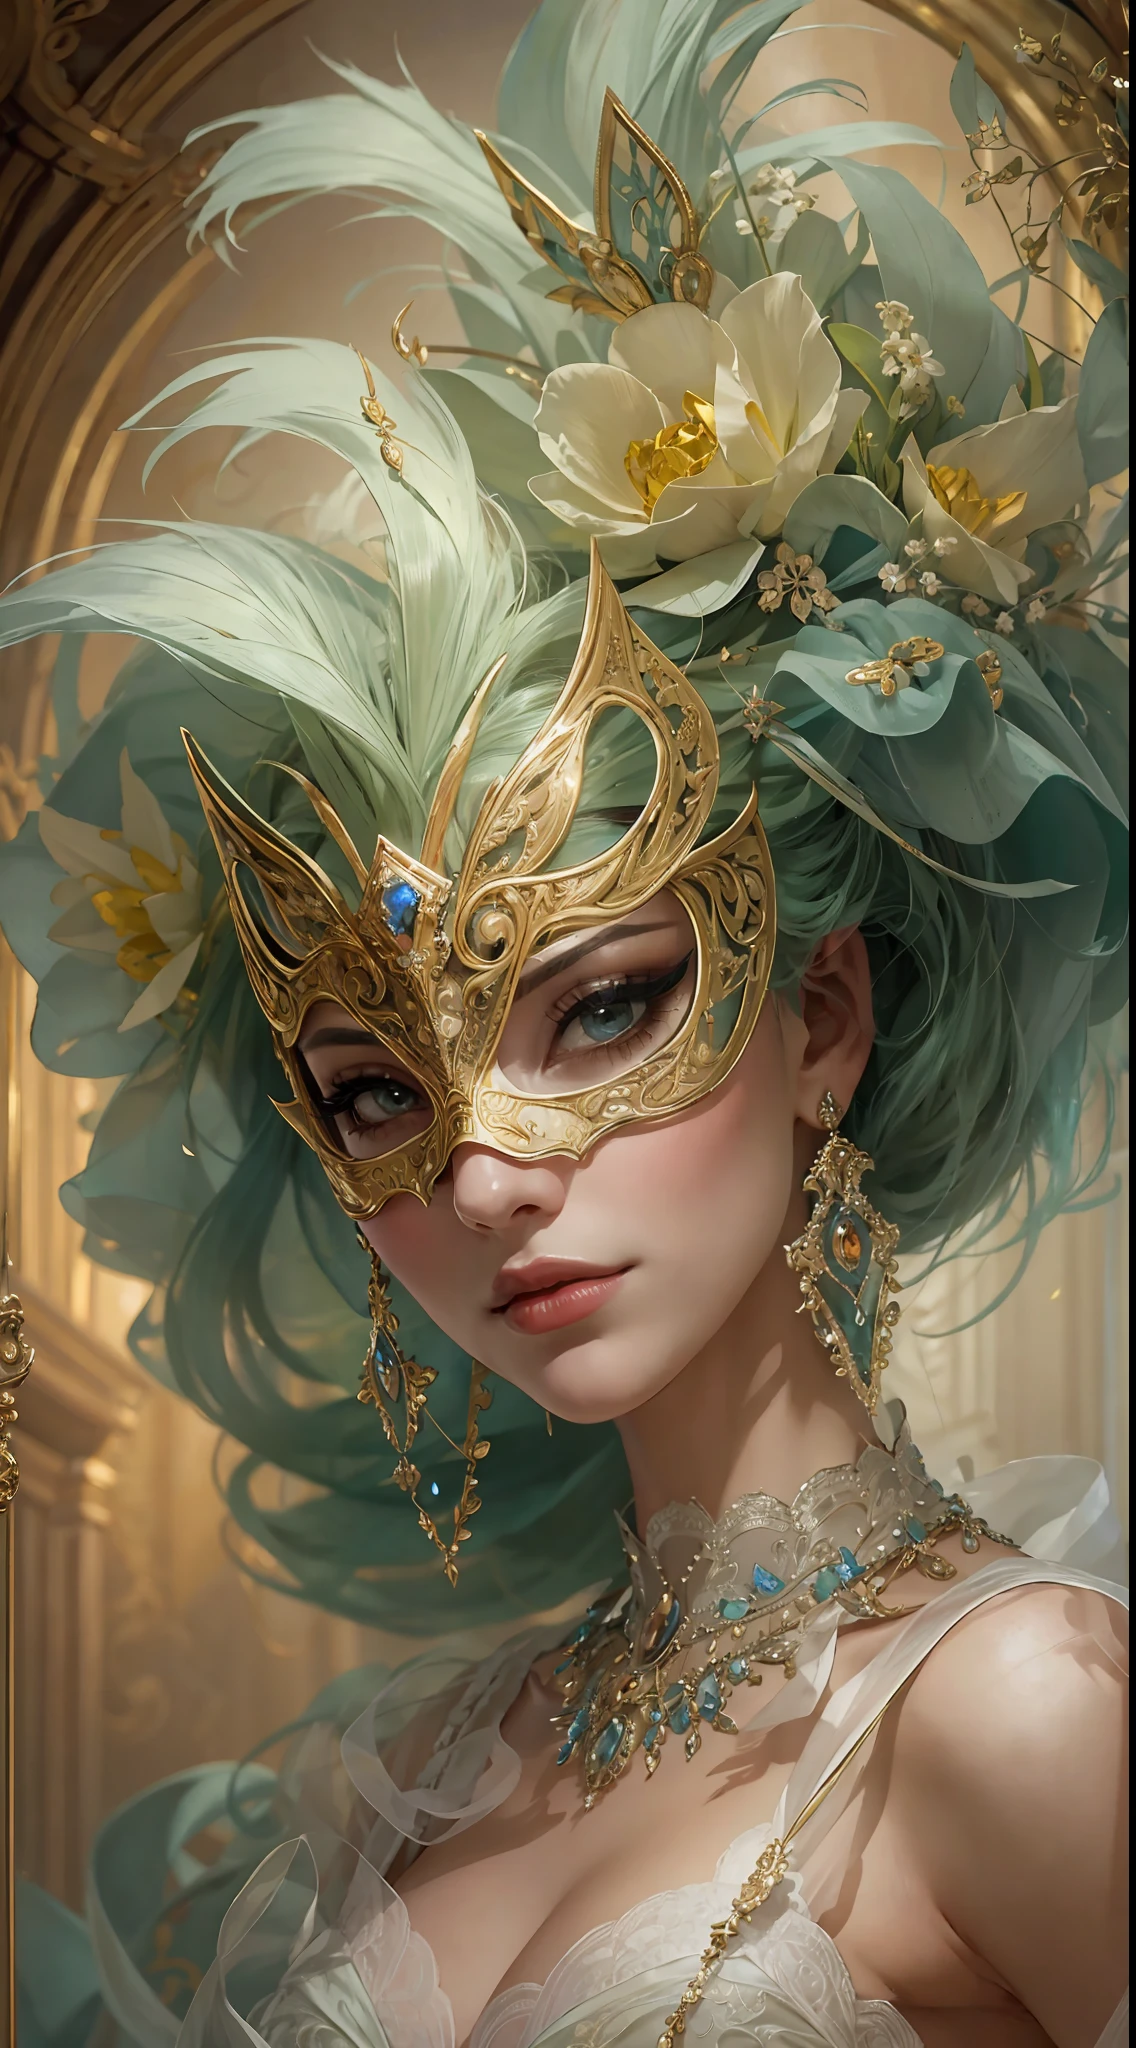 สร้างความภาคภูมิใจ, beautiful woman from the 18th century wearing a stunning and ซับซ้อนly detailed silk ballgown adorned with lace and jewels. She is in the midst of an สง่างาม masquerade ball and surrounded by music, การตกแต่งแบบรอยัล, และรายละเอียดราคาแพง. ((ผู้หญิงคนนั้นถือหน้ากากสวมหน้ากากที่ประณีตและหรูหราซึ่งได้รับแรงบันดาลใจจากเทพนิยายแฟนตาซี.)) Her face is ซับซ้อนly detailed and realistic with puffy lips and a big mouth. สำคัญ: ดวงตาของเธอมีความสําคัญและสวยงาม, ด้วยรายละเอียดที่สมจริงมากมาย, การแรเงาที่สมจริง, และหลายสีและเฉดสี. ฉากนี้เป็นลูกบอลมาสเคอเรดที่สวยงาม, โดยที่ขุนนาง, ชาวโซเชียล, และแขกลึกลับจากดินแดนอันไกลโพ้นมารวมตัวกันในค่ําคืนที่น่าจดจํา. ตั้งแต่หน้ากากเวนิสไปจนถึงการสร้างสรรค์ขนนกที่ประณีต, การปลอมตัวของแขกแต่ละคนสะท้อนให้เห็นถึงบุคลิกที่เป็นเอกลักษณ์และความปรารถนาที่ไม่ได้พูด. เมื่อช่วงเย็นที่ผ่านมา, หน้ากากกลายเป็นทั้งสัญลักษณ์ของการปกปิดและการเปิดเผย, อนุญาตให้ผู้เข้าร่วมเปิดเผยส่วนของตัวเองที่พวกเขาอาจจะซ่อนไว้. ดื่มด่ํากับเสน่ห์ของลูกบอลสวมหน้ากากในศตวรรษที่ 19 นี้, ที่ซึ่งความสง่างามของยุคอดีตและความลึกลับของหน้ากากรวมกันเพื่อสร้างประสบการณ์ที่มีเสน่ห์ที่จะคงอยู่ในใจคุณตลอดไป. ใช้องค์ประกอบแบบไดนามิกเพื่อดึงดูดความสนใจของผู้ชม. (((ผลงานชิ้นเอก))), ซับซ้อน, สง่างาม, มีรายละเอียดสูง, คู่บารมี, การถ่ายภาพดิจิตอล, งานศิลปะโดย Artgerm และ Ruan Jia และ Gregor Rutkowski, (ผลงานชิ้นเอก, ดวงตาที่สวยงามที่มีรายละเอียดประณีต: 1.2), เอชดีอาร์, เนื้อสัมผัสของผิวที่สมจริง, (((ผู้หญิง 1 คน))), (((ตามลำพัง)))